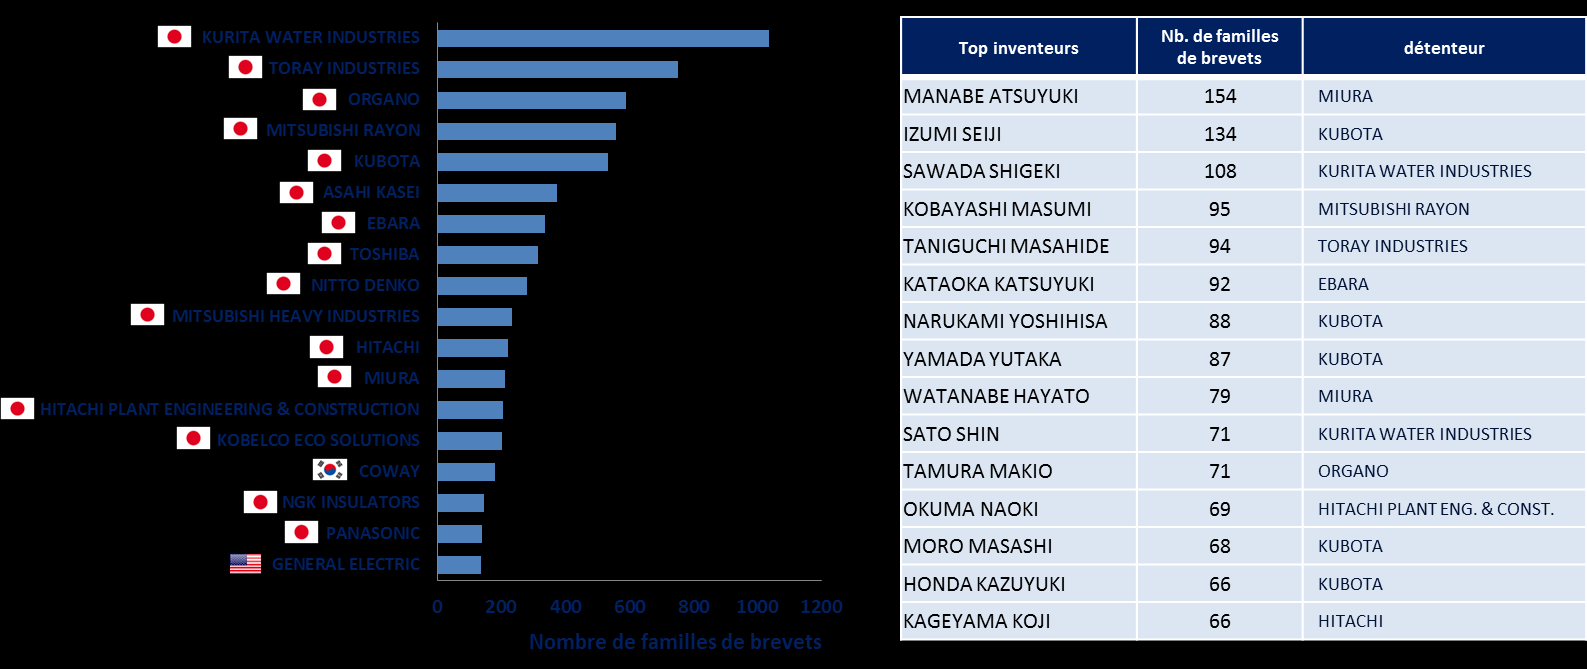 Classement des principaux détenteurs Les principaux détenteurs des brevets sont majoritairement des acteurs industriels Japonais.